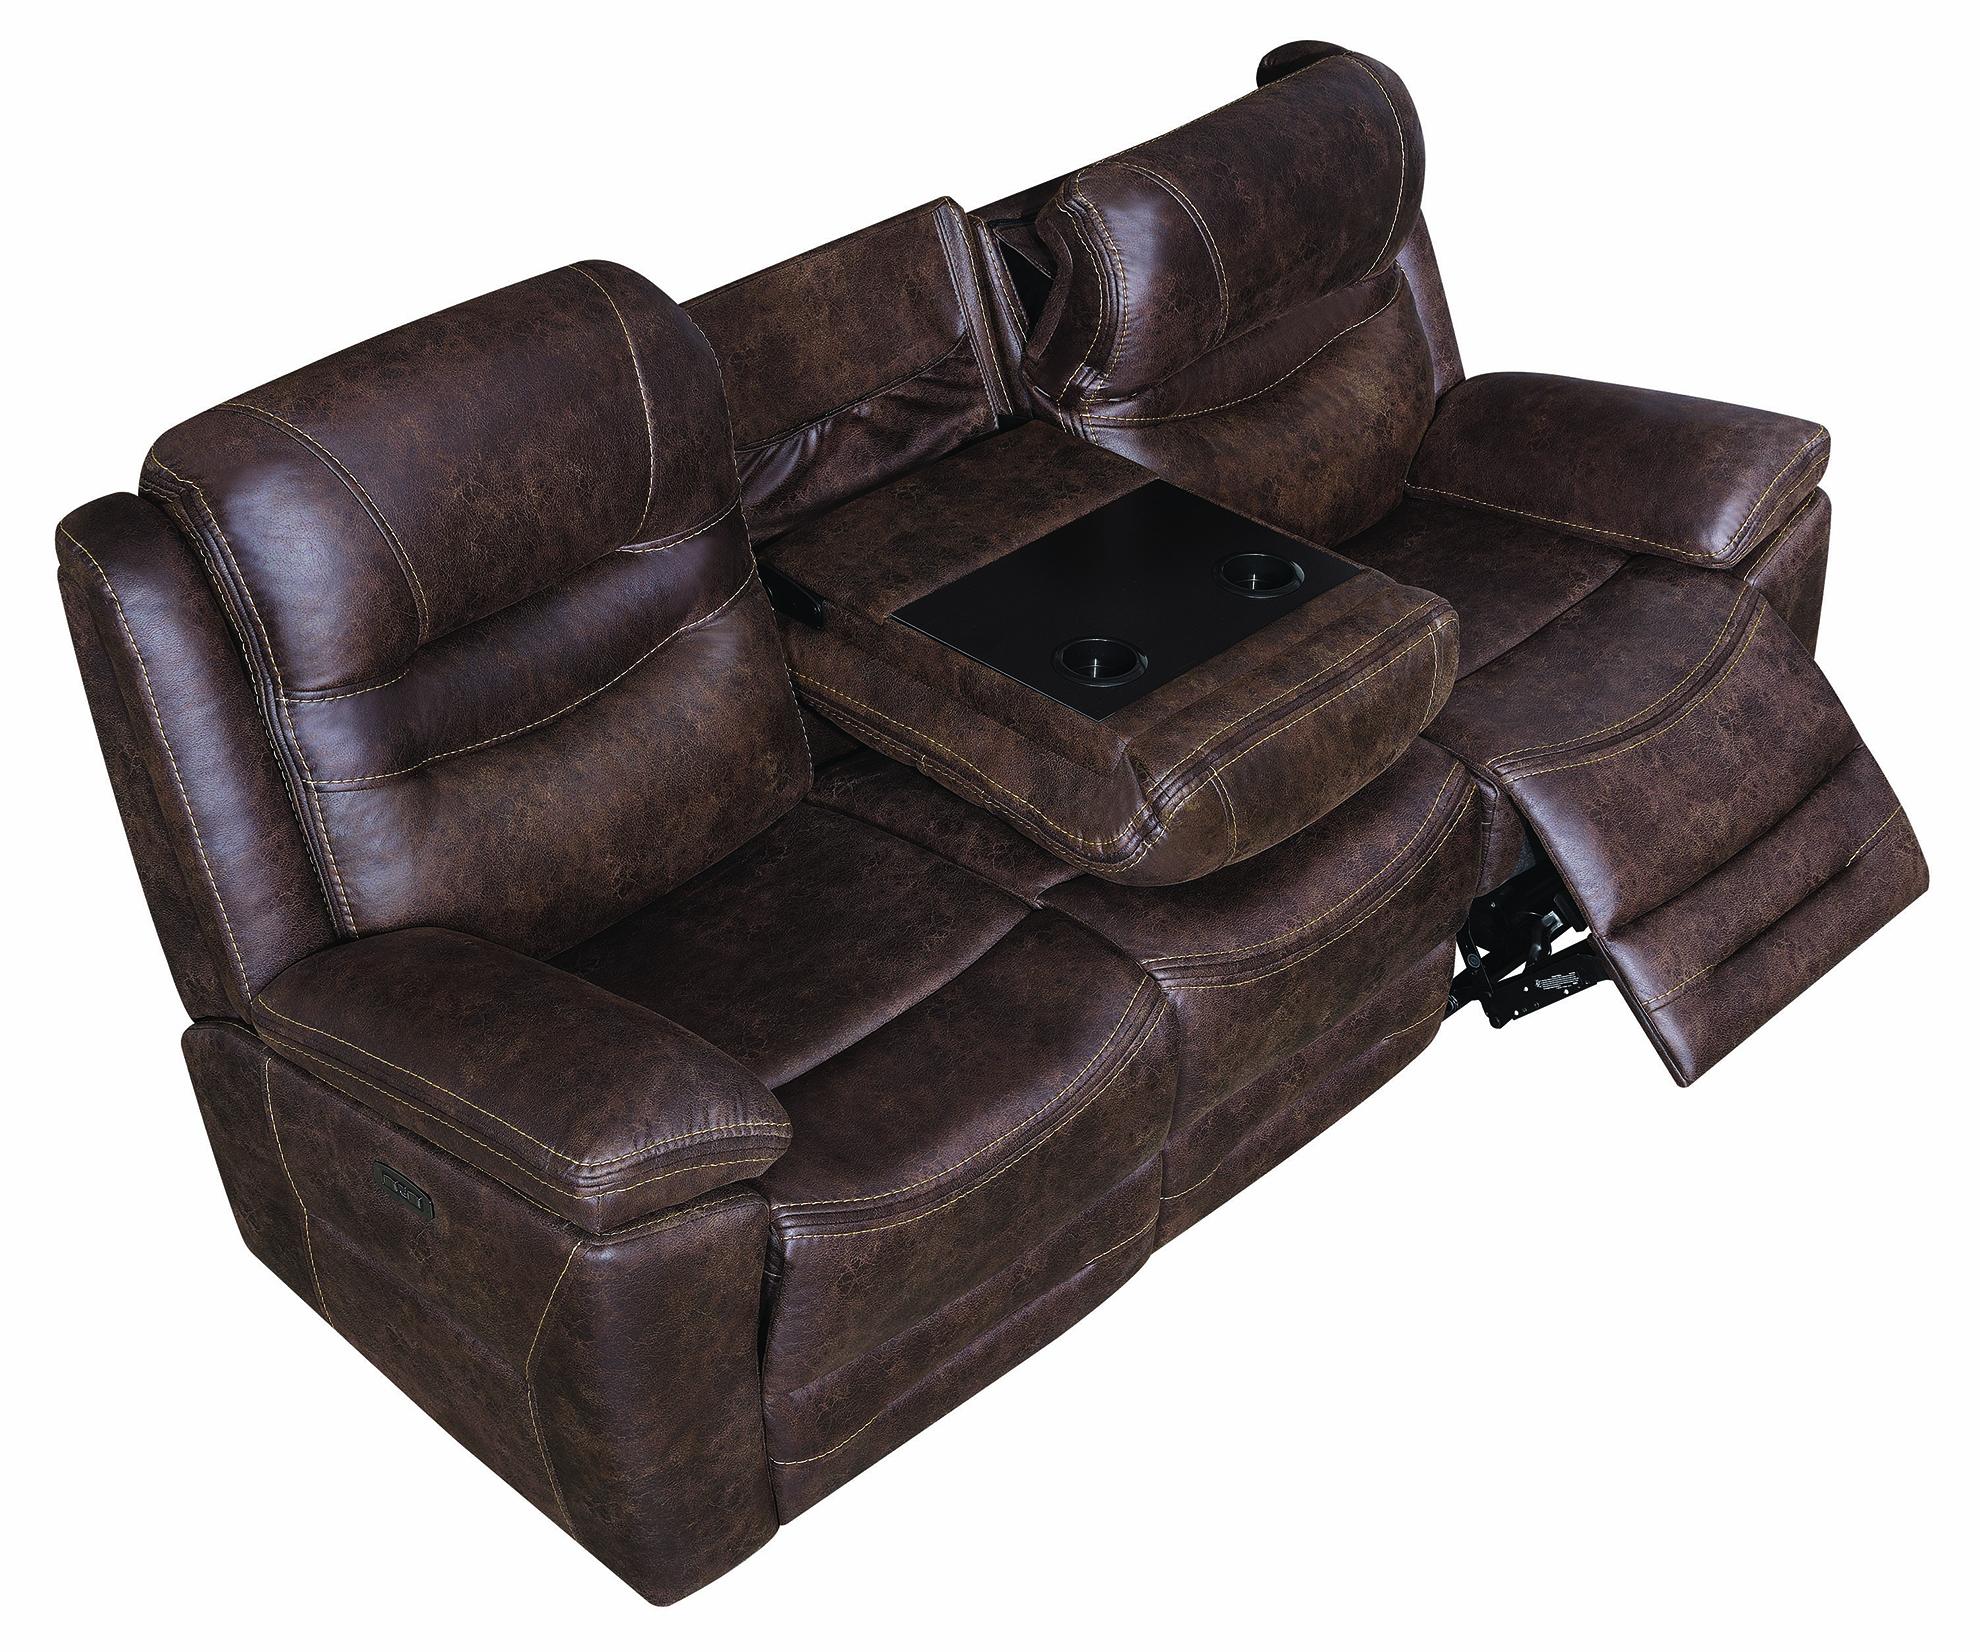 

    
603331PP Coaster Power Reclining Sofa
